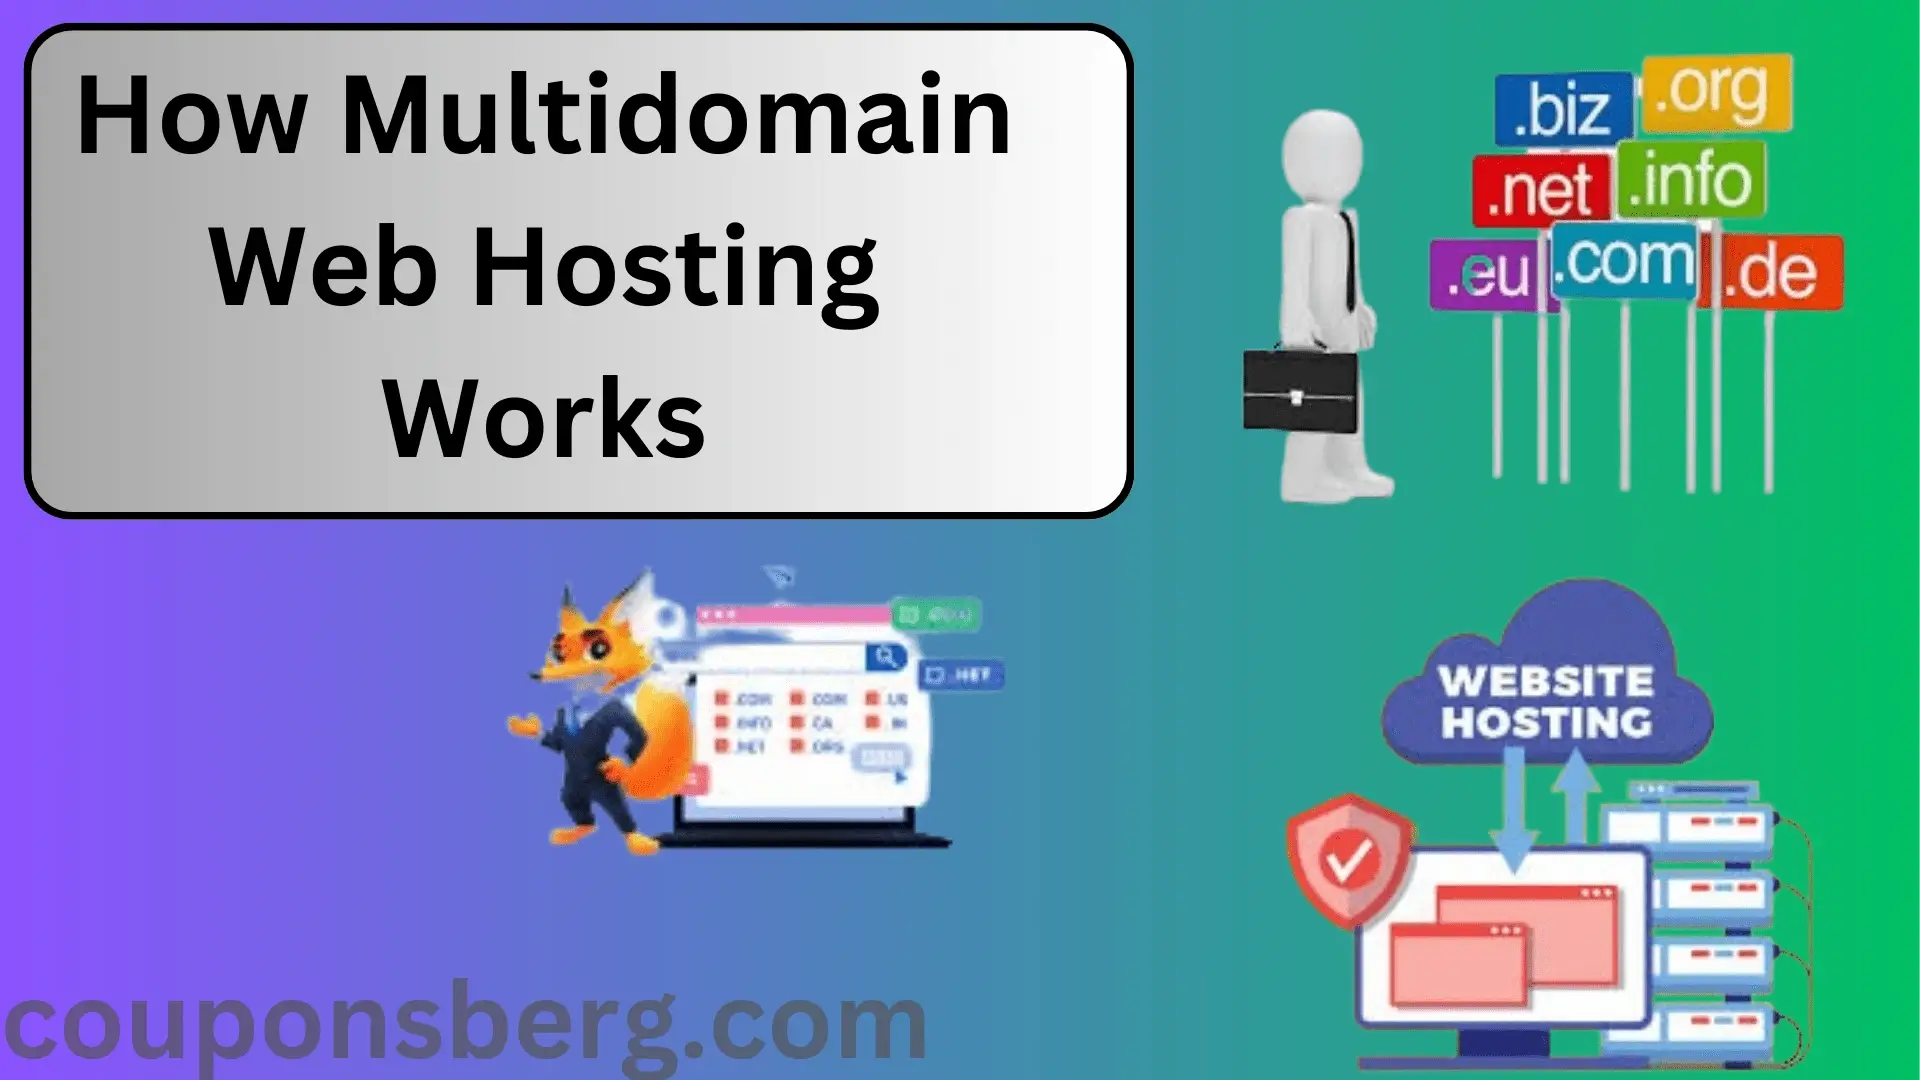 How Multidomain Web Hosting Works